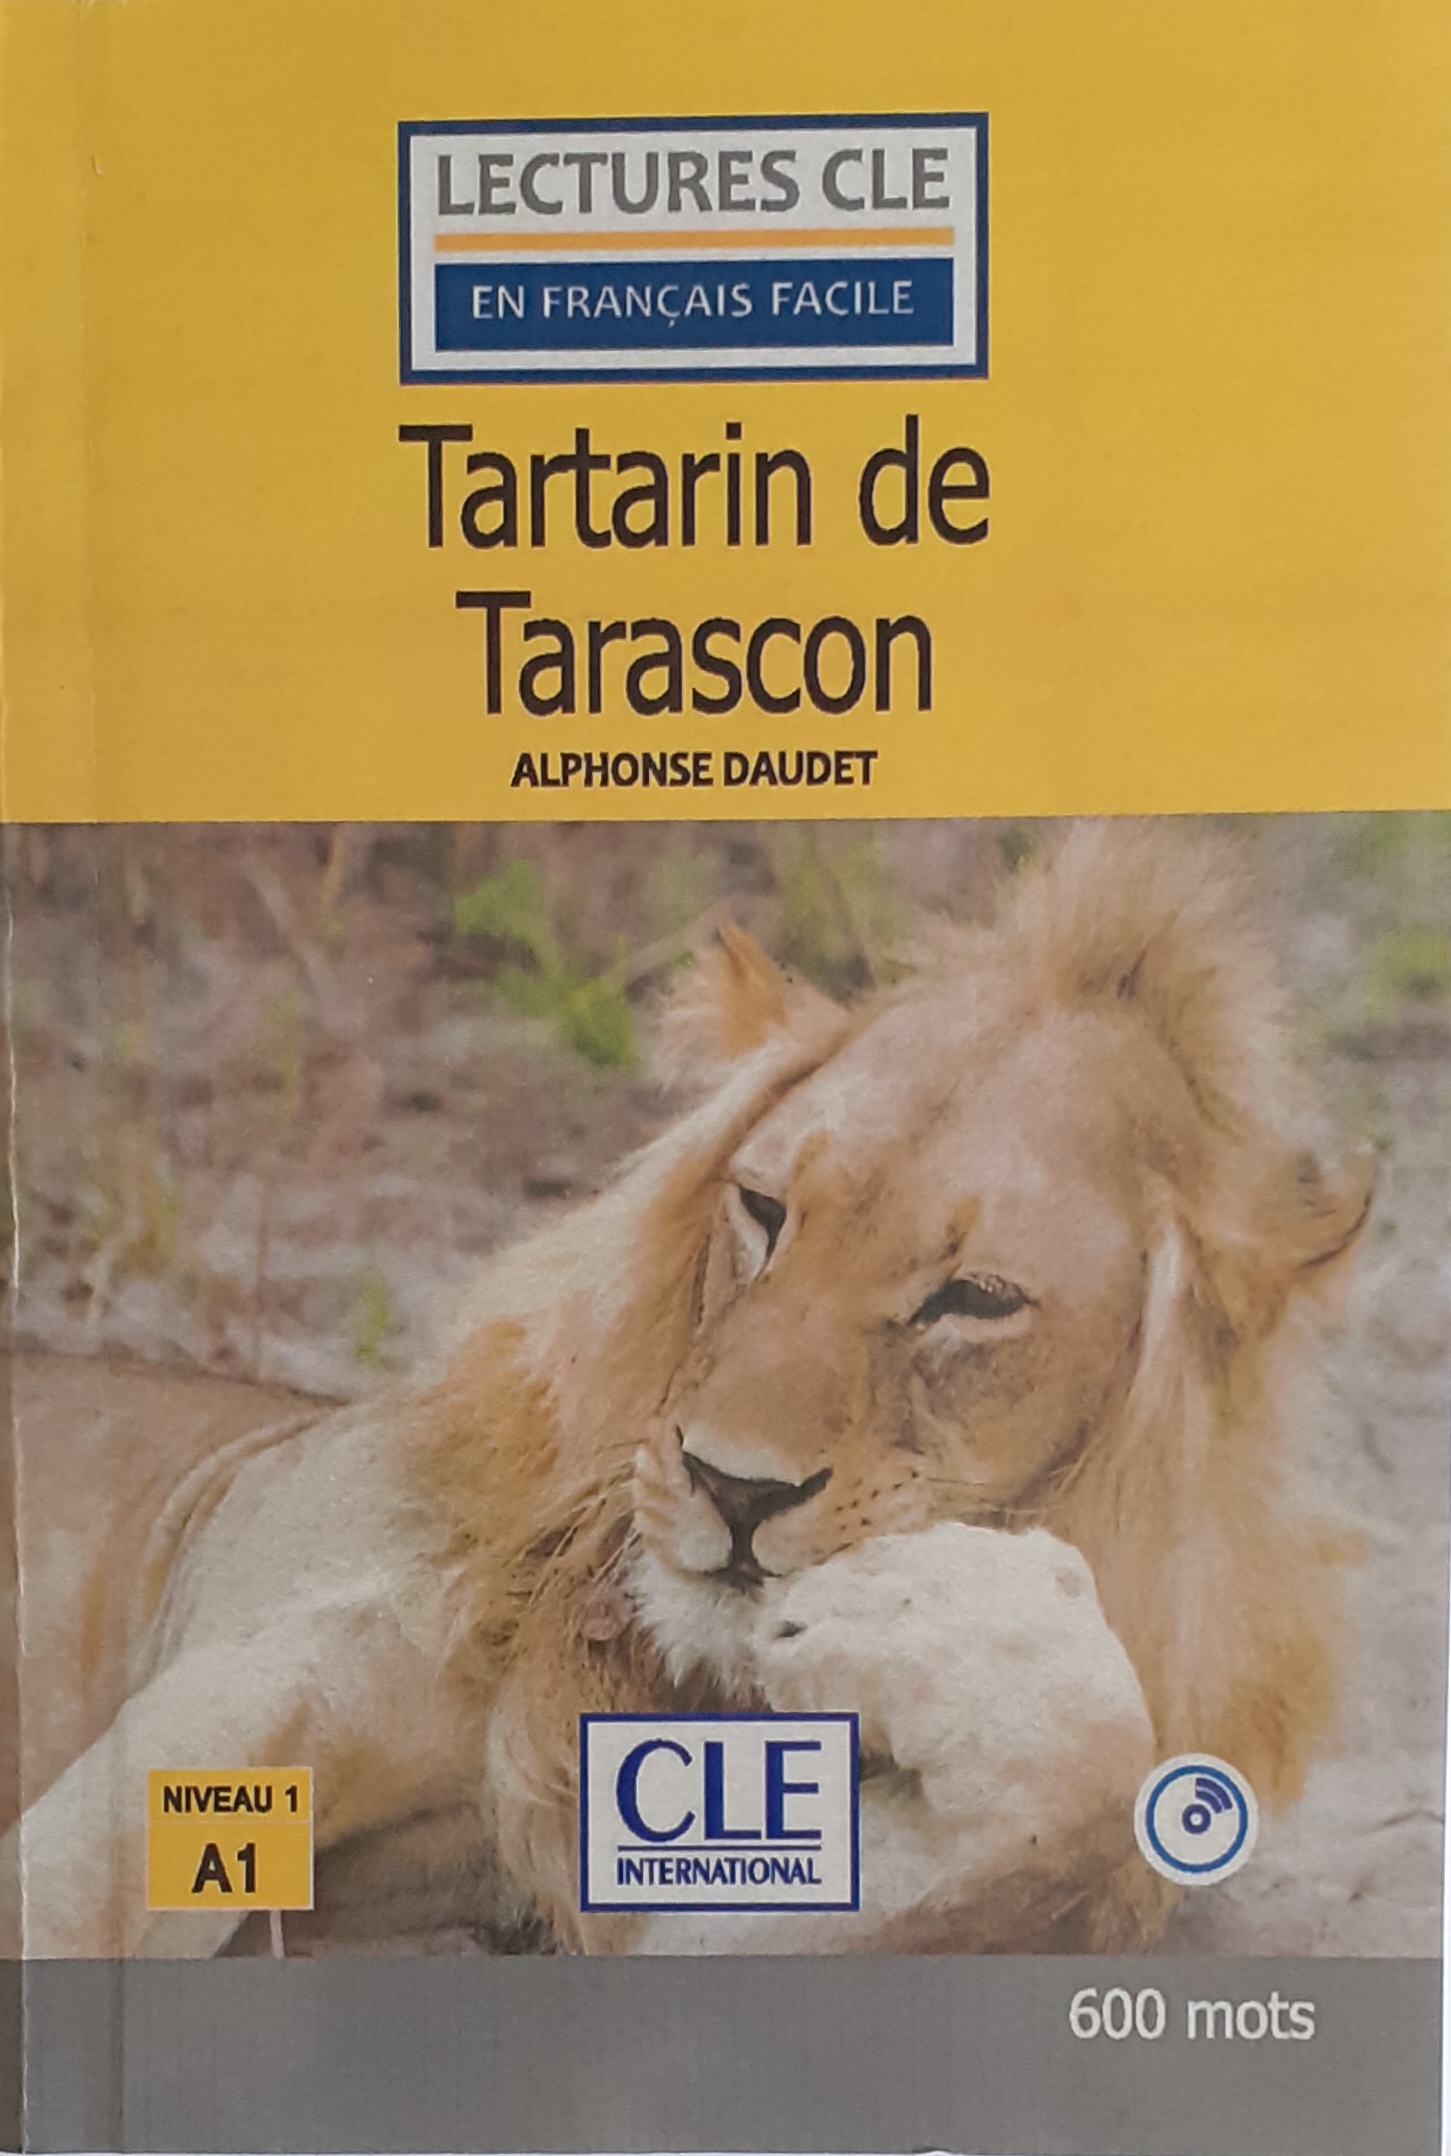 کتاب داستان فرانسه تارتارین تاراسکون tartarin de tarascon